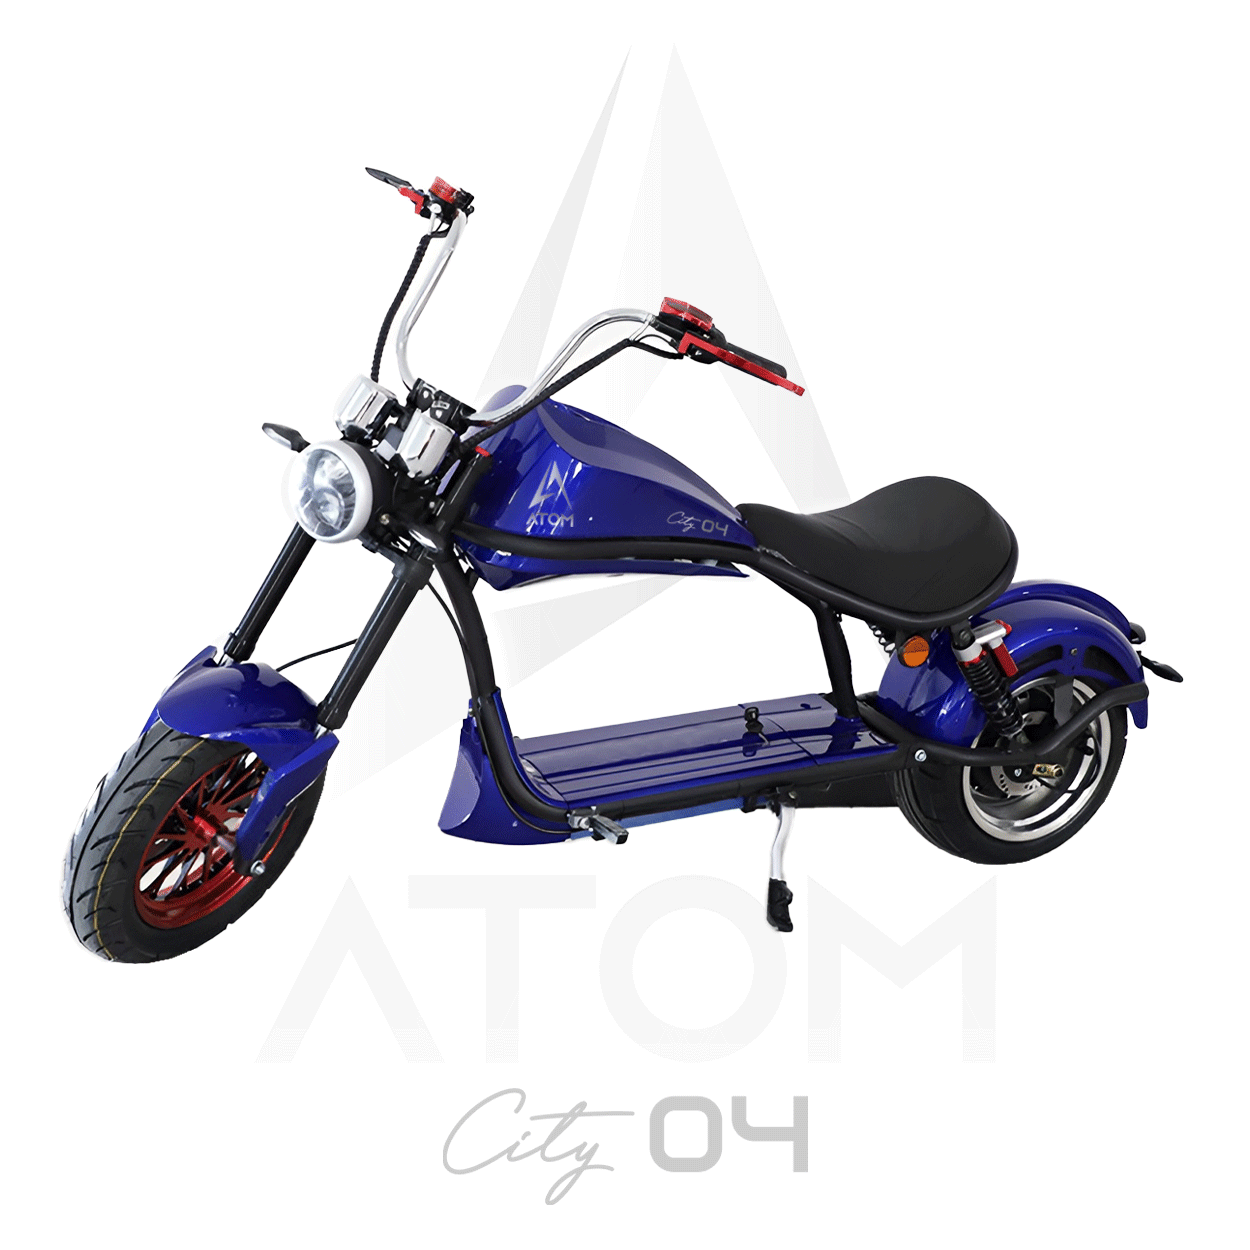 Scooter électrique, Atom City 04 | 2000 W | 50 cc | V-max 45 km/h | Autonomie 60 km - Atom Motors